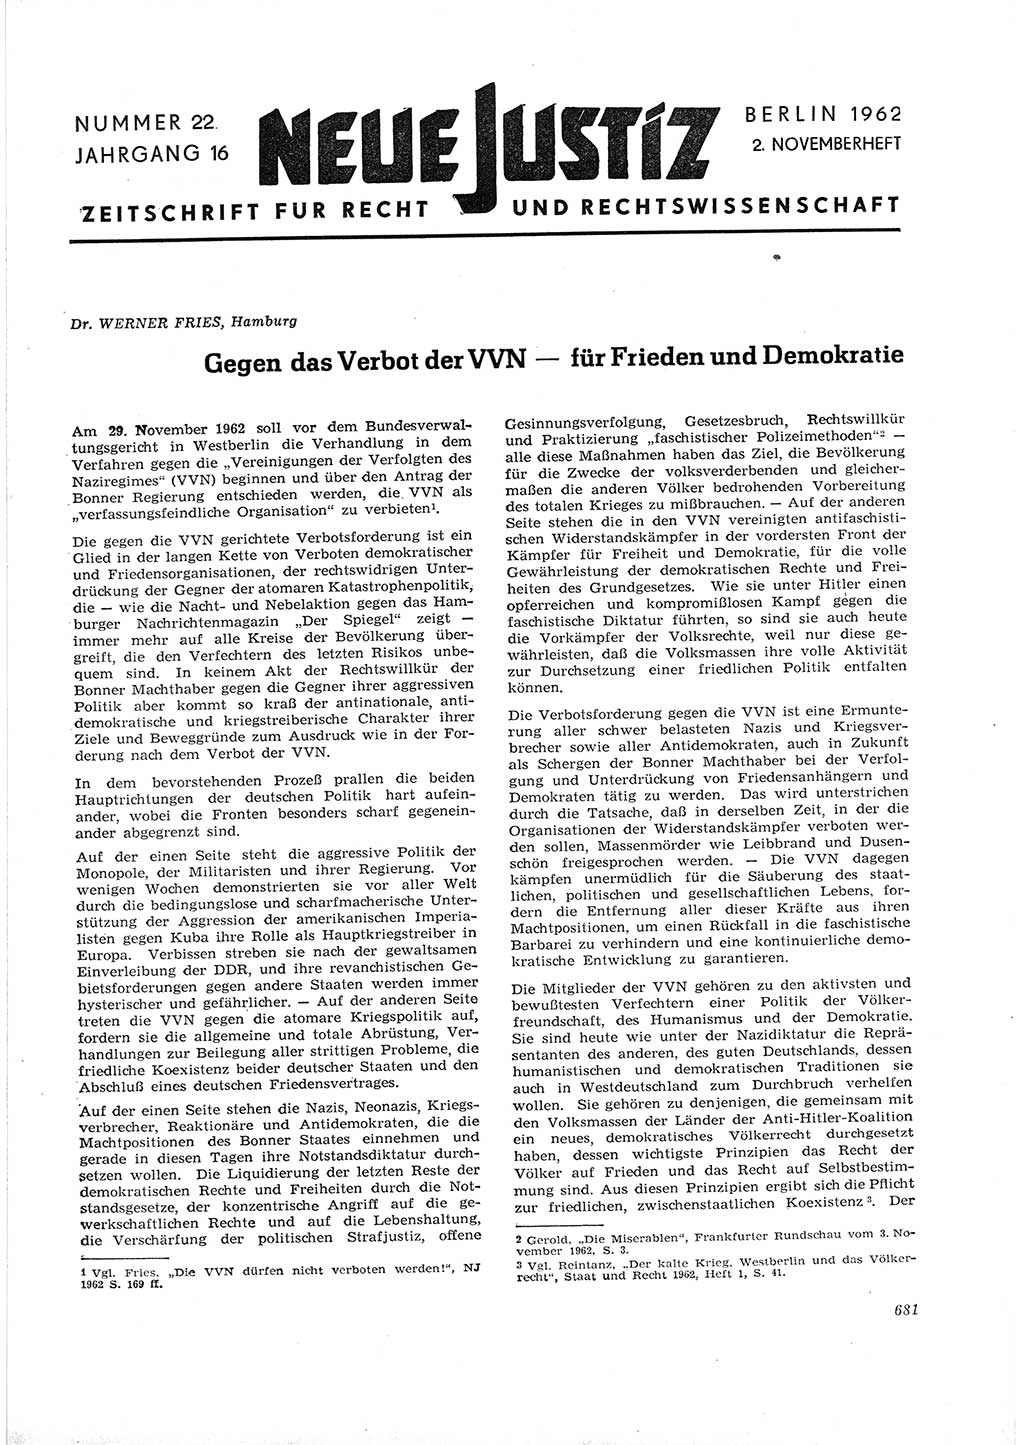 Neue Justiz (NJ), Zeitschrift für Recht und Rechtswissenschaft [Deutsche Demokratische Republik (DDR)], 16. Jahrgang 1962, Seite 681 (NJ DDR 1962, S. 681)